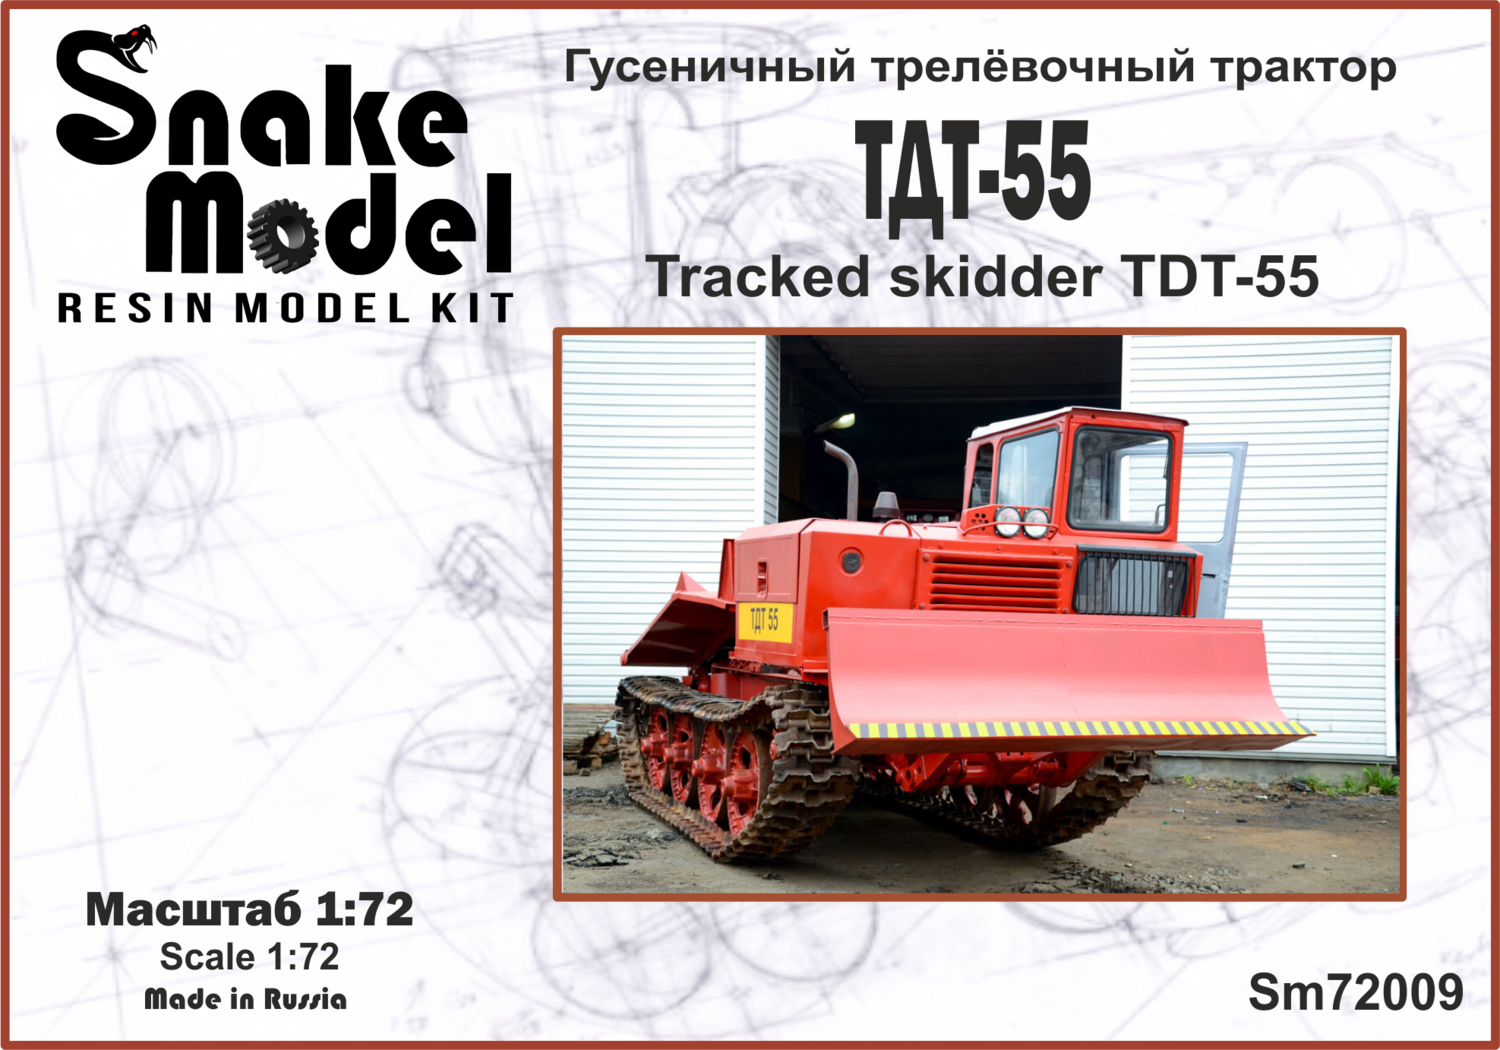 Гусеничный трелёвочный трактор ТДТ-55